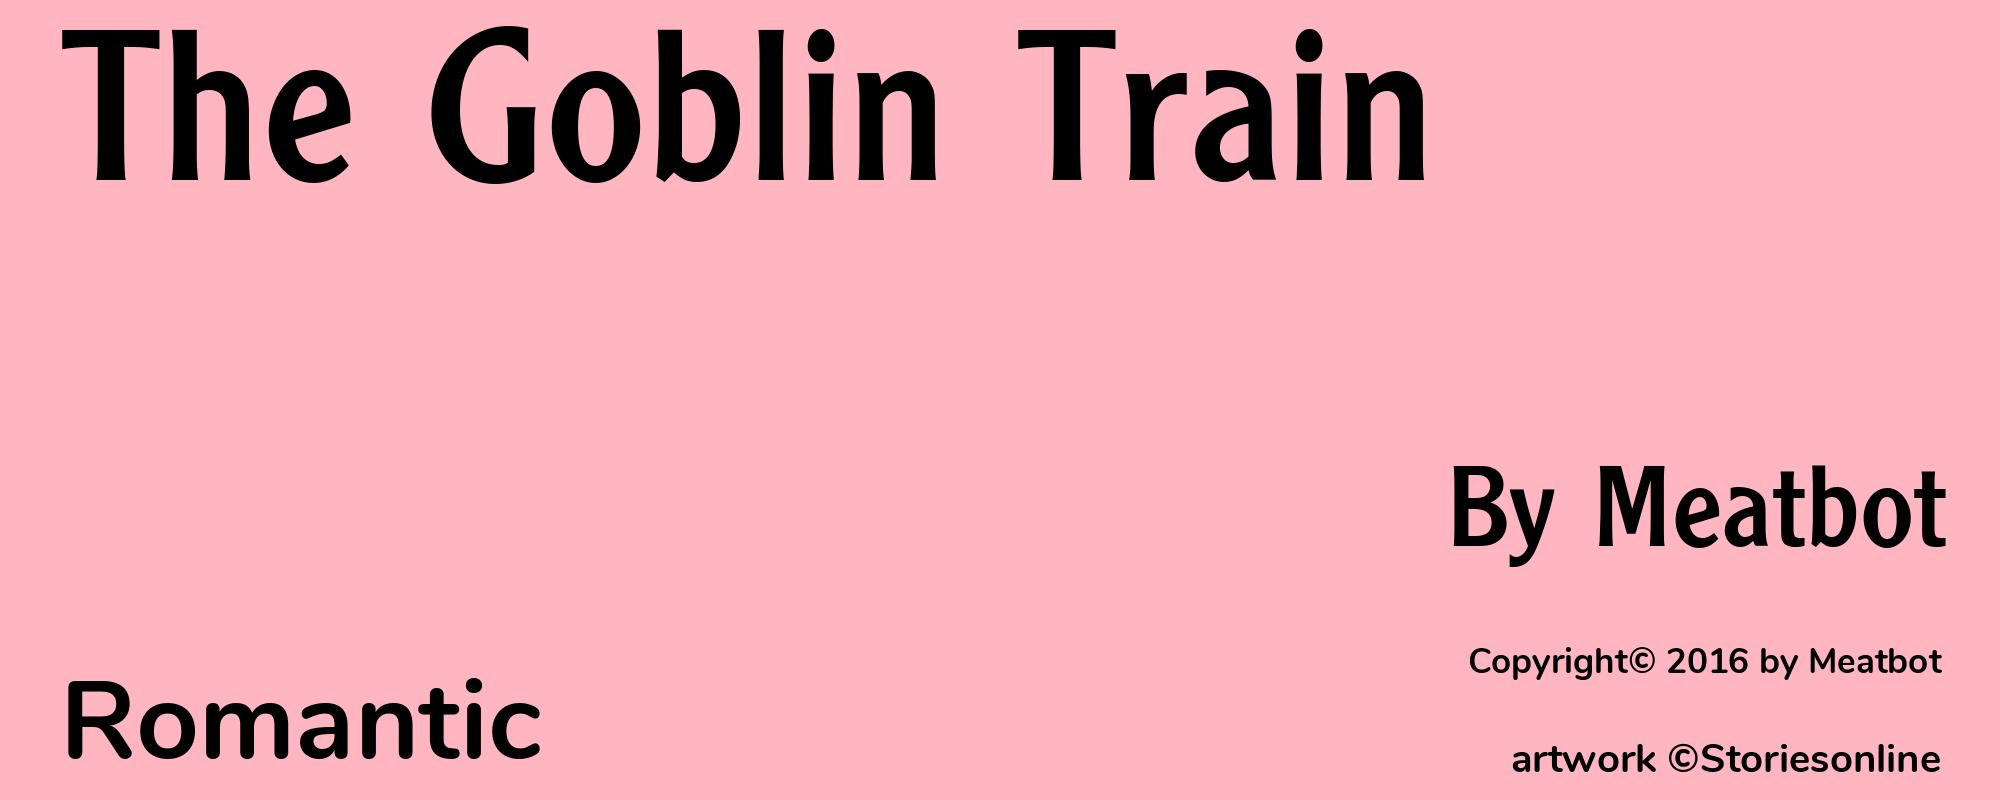 The Goblin Train - Cover